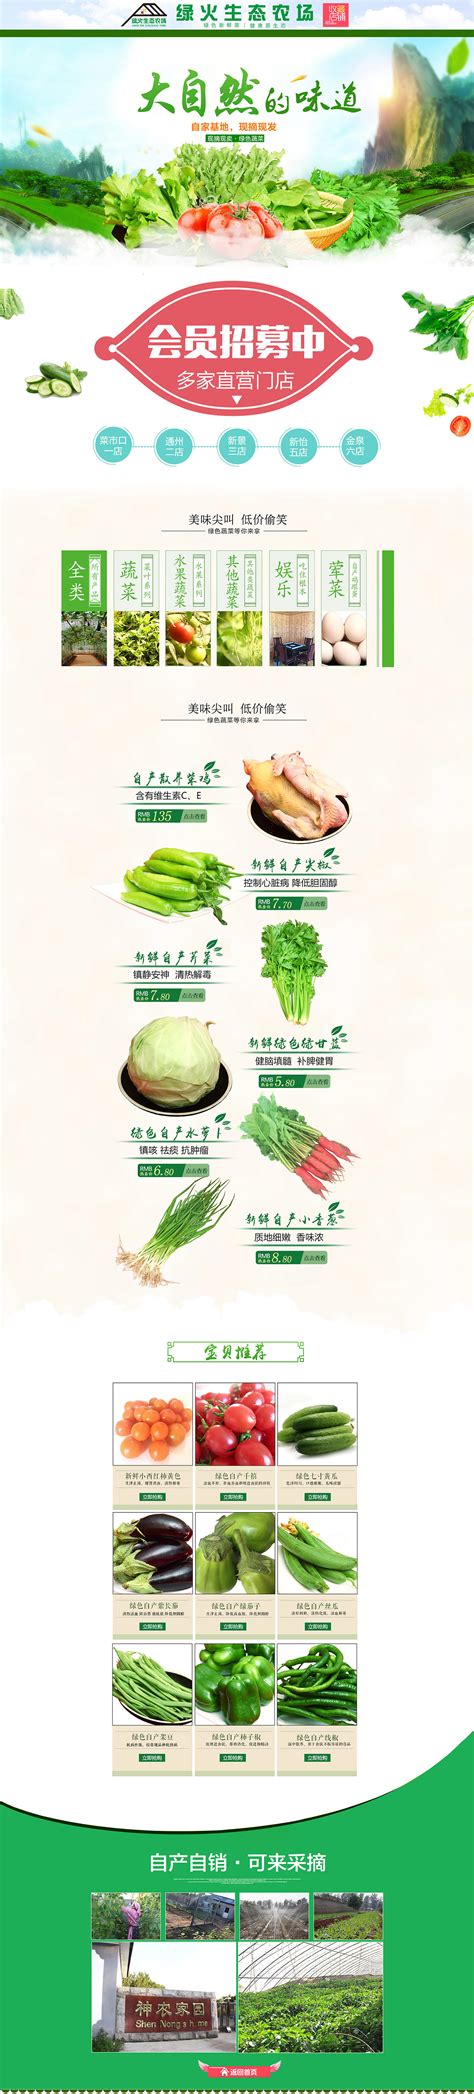 生鲜特价蔬菜水果绿色简约电商banner海报模板下载-千库网